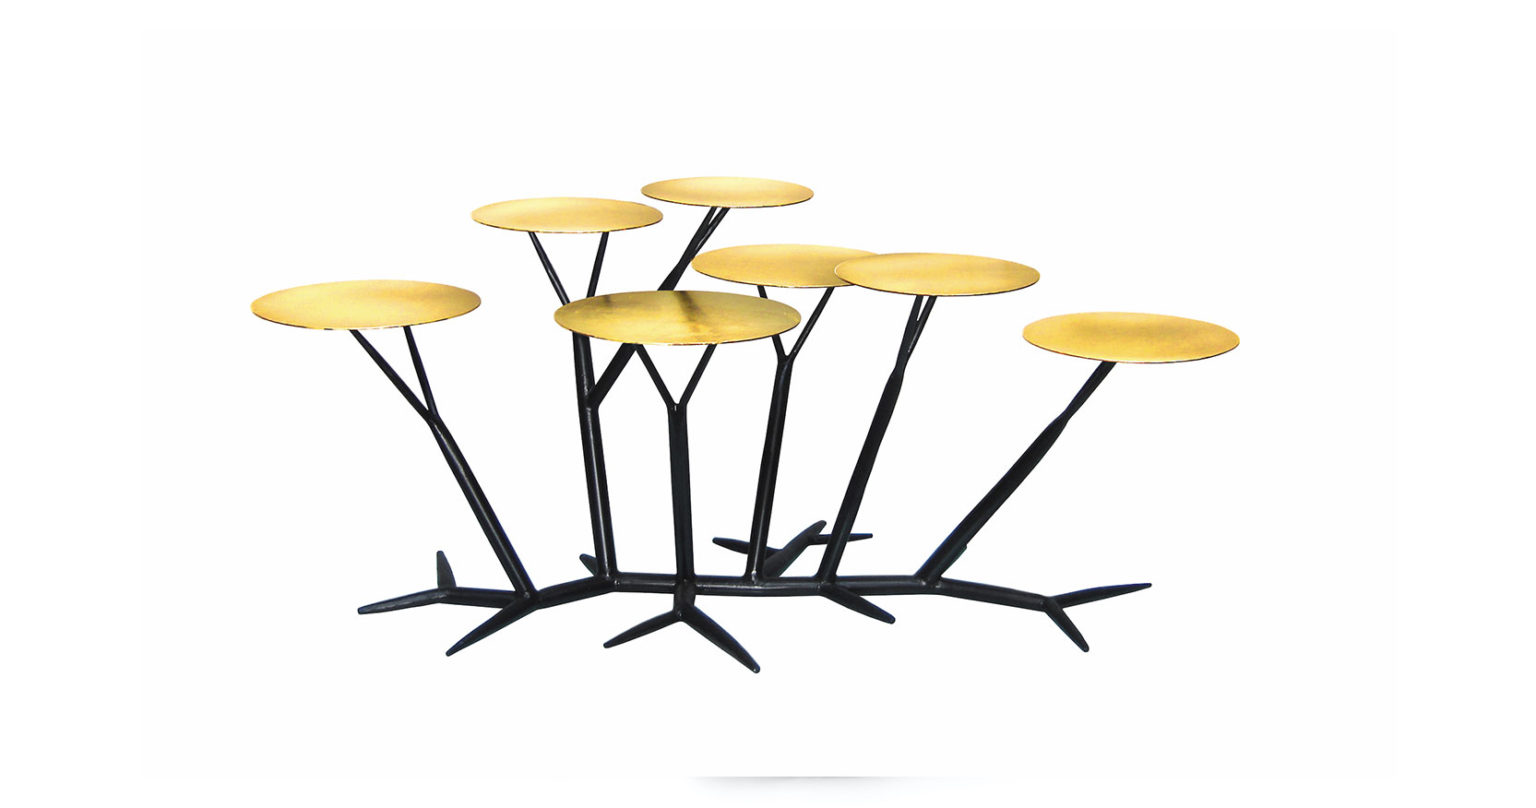 Eric Robin, spectaculaire table basse comme une sculpture, 7 plateaux ronds recouverts de feuille d'or, qui sont réunis par 7 pieds et un socle en forme de branches en fer forgé noir